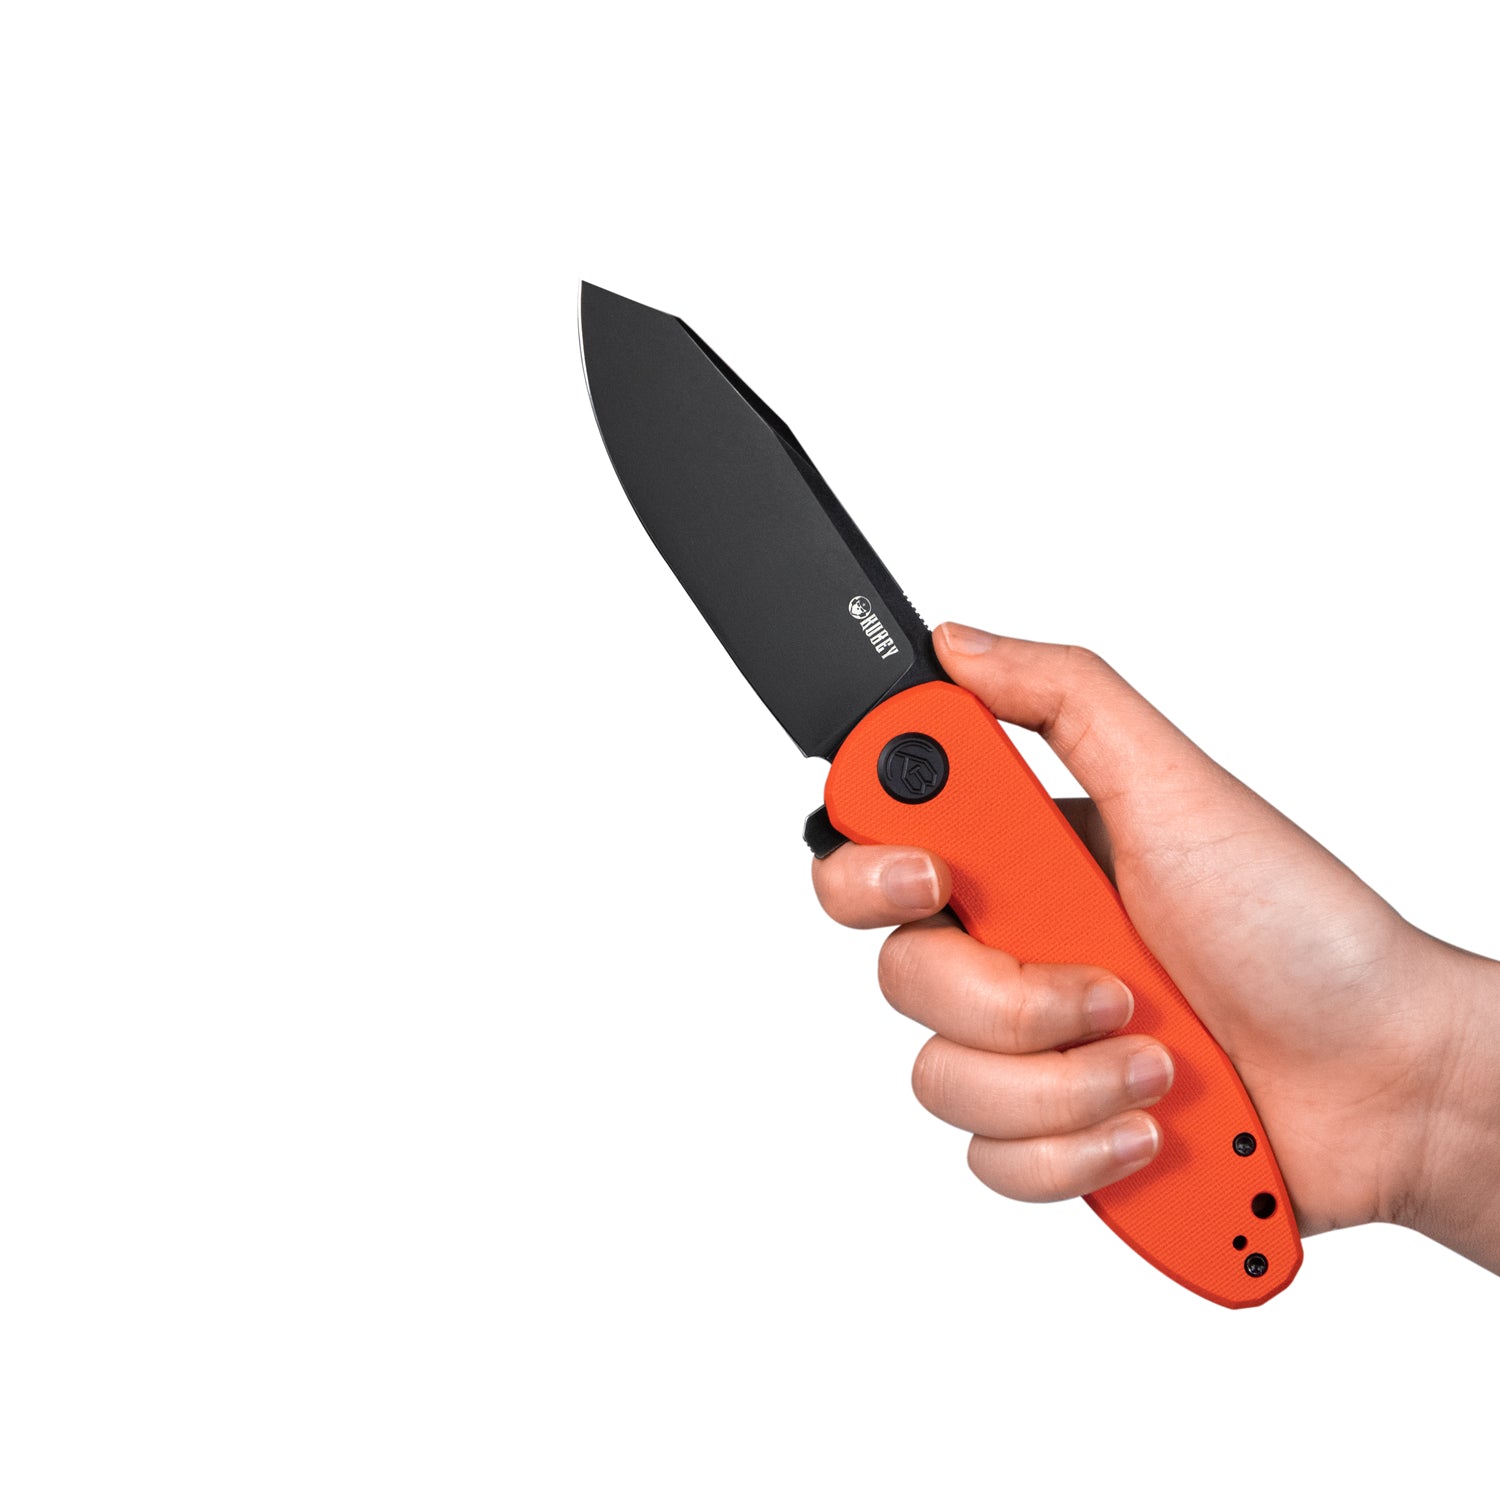 Kubey Master Chief Outdoor Folding Pocket Knife Orange G10 Handle 3.43" Blackwash AUS-10 KU358E